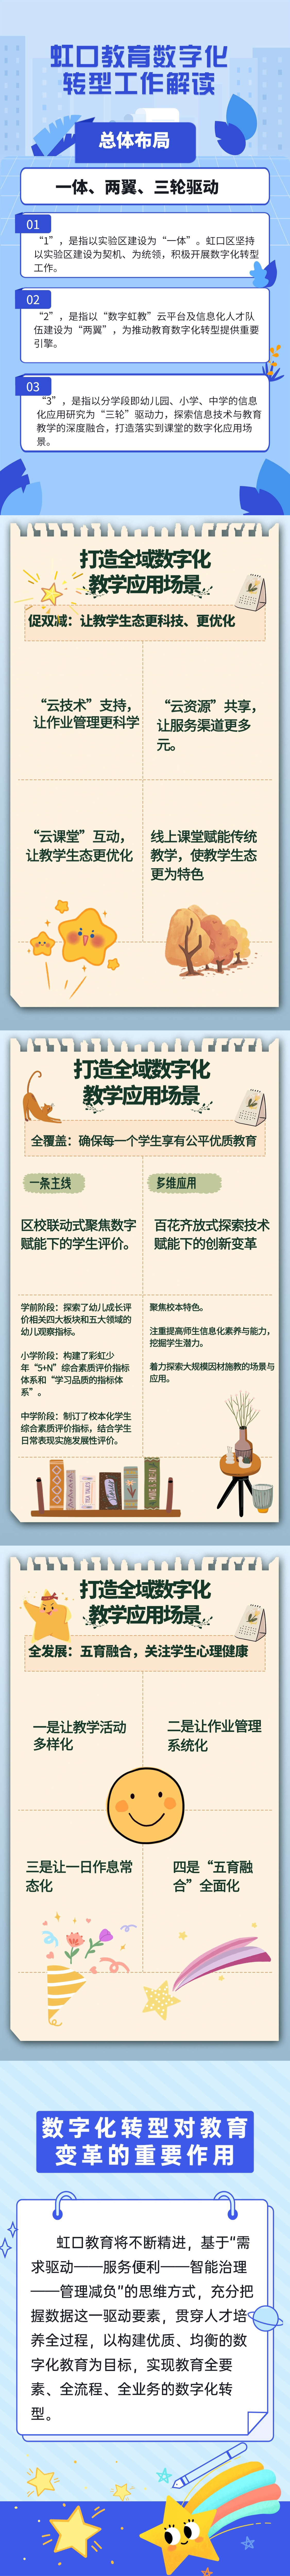 10.24【图解】虹口教育数字化转型解读.png